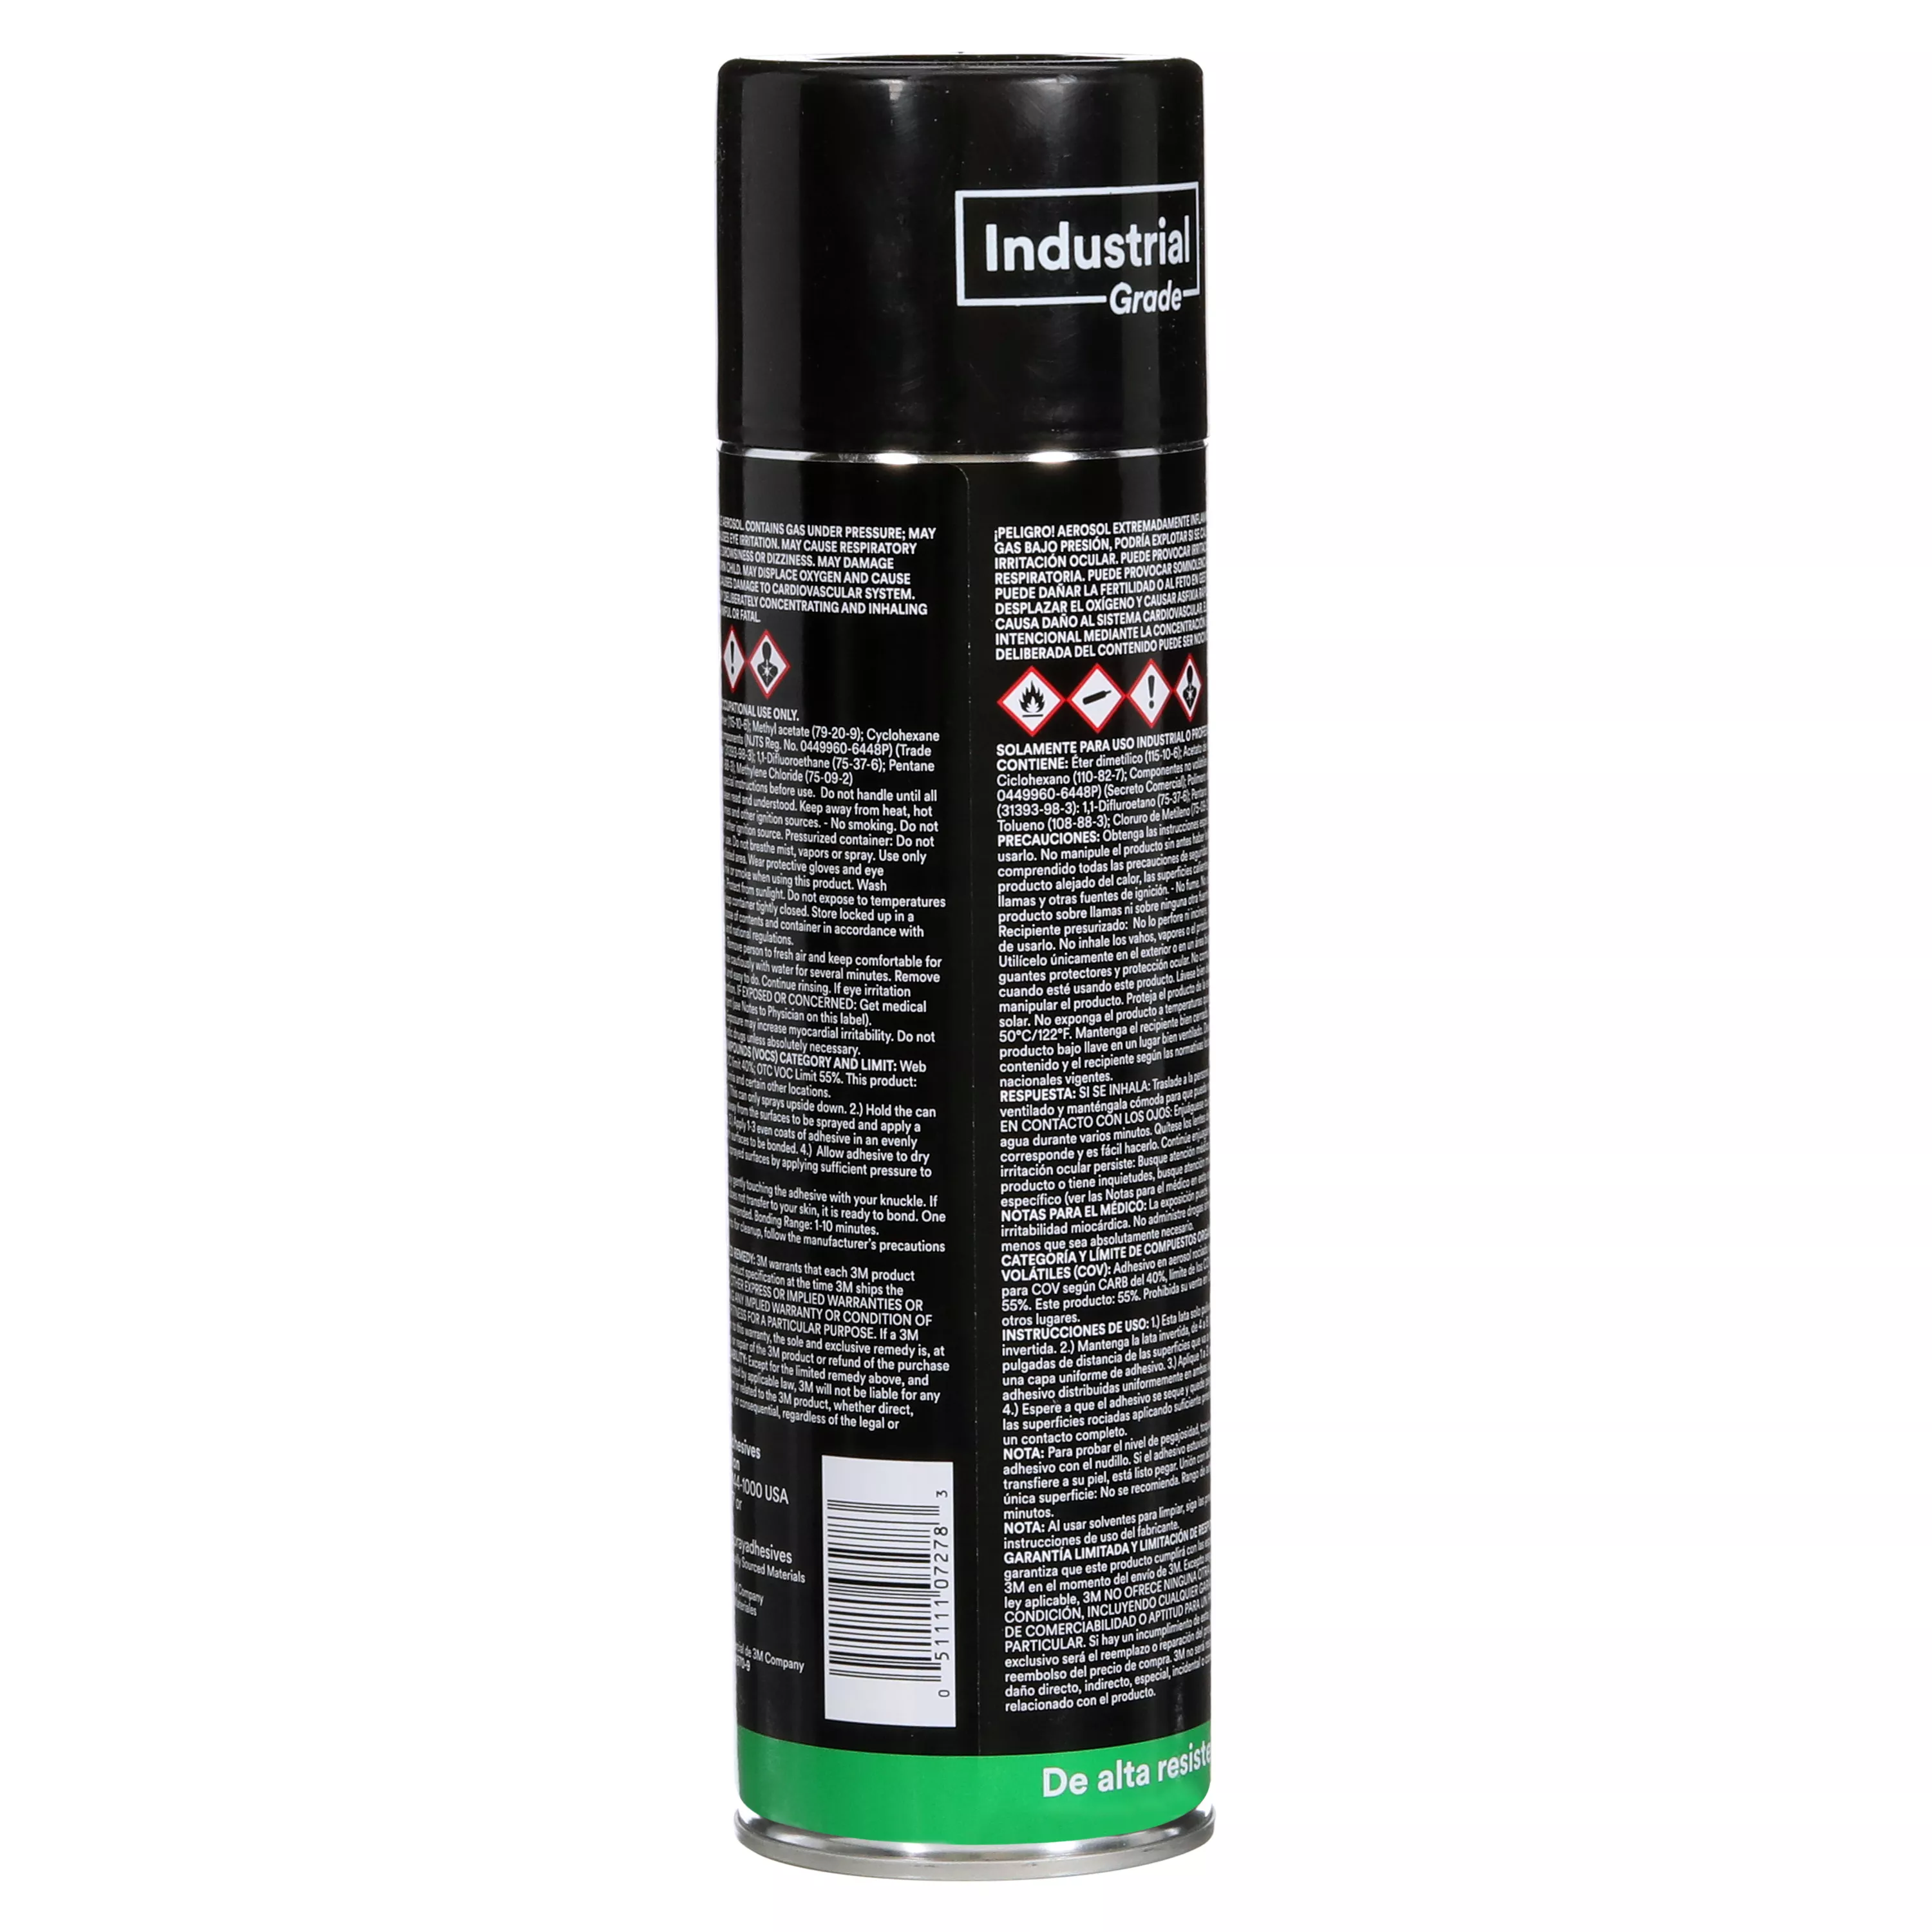 SKU 7010292719 | 3M™ Hi-Strength Spray Adhesive 90